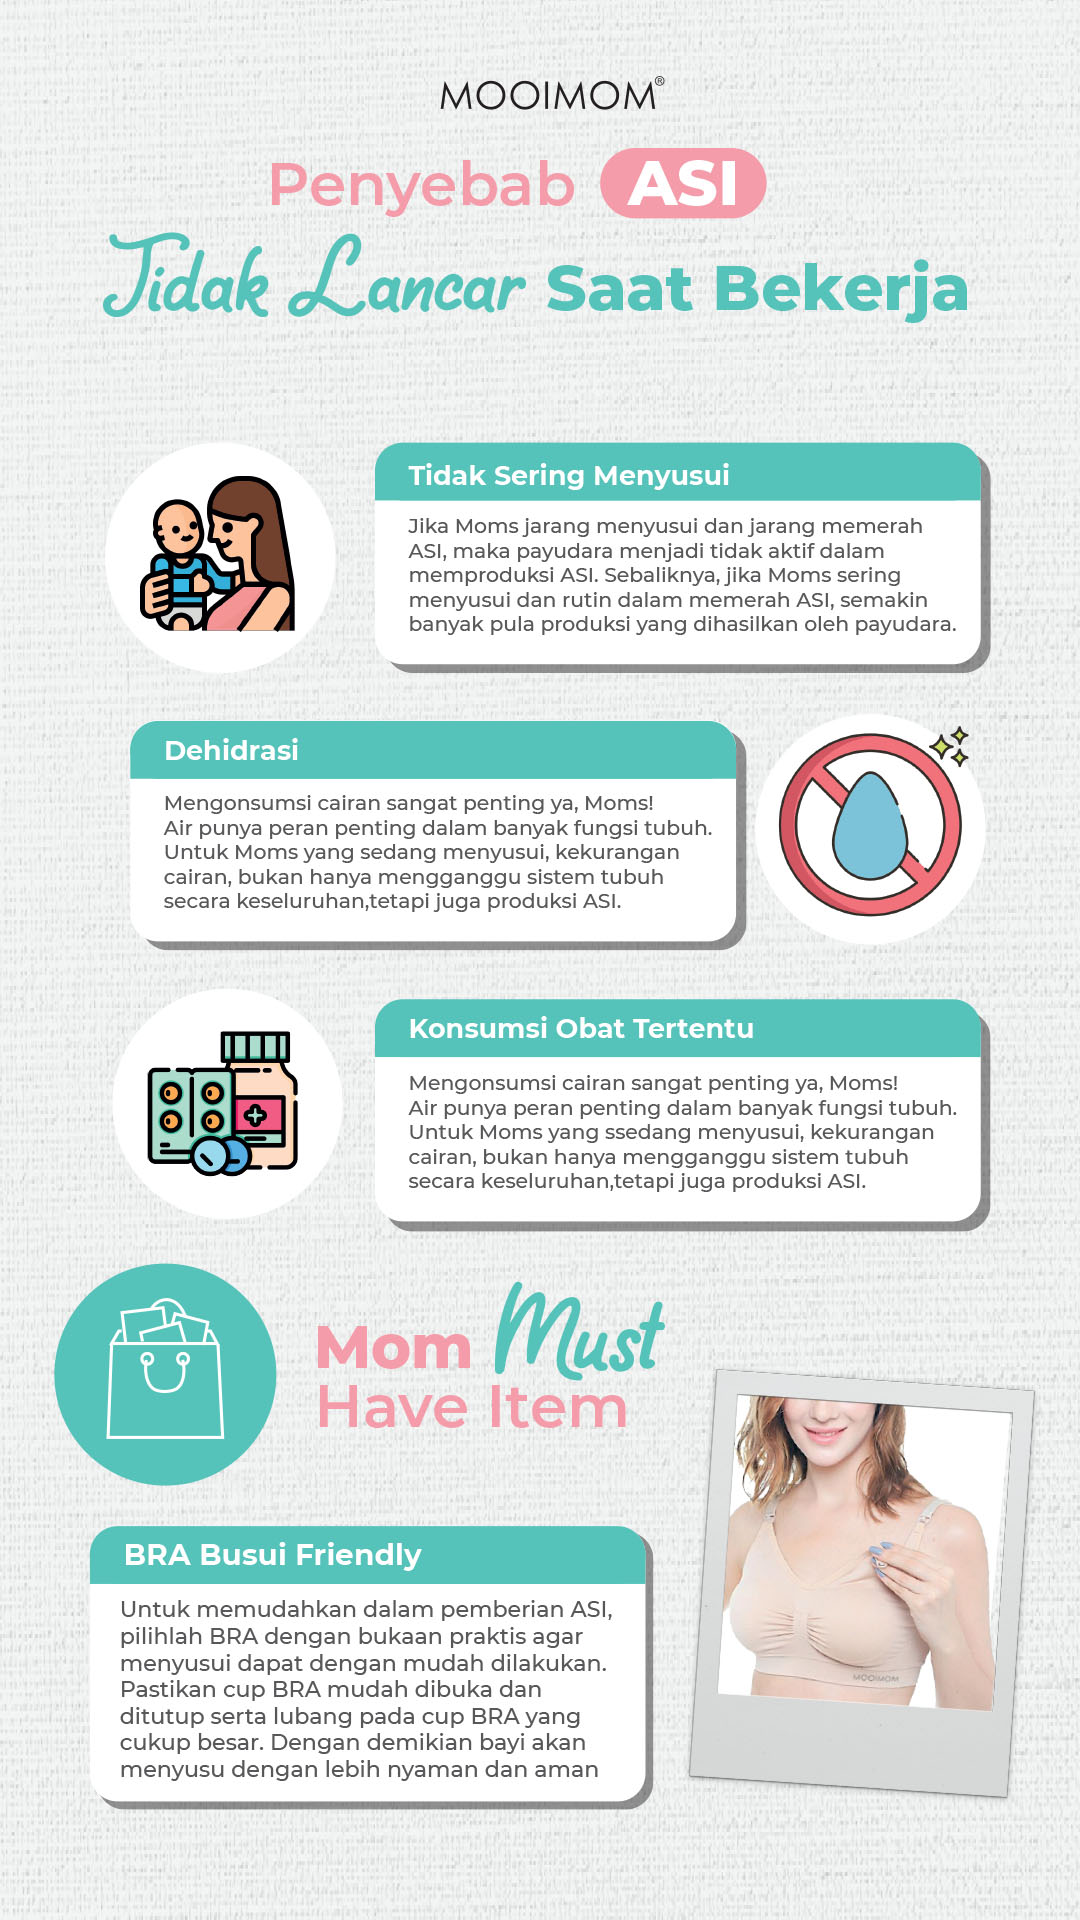  Tips Agar ASI Tetap Lancar untuk Ibu Menyusui yang Bekerja Mooimom Mamapedia